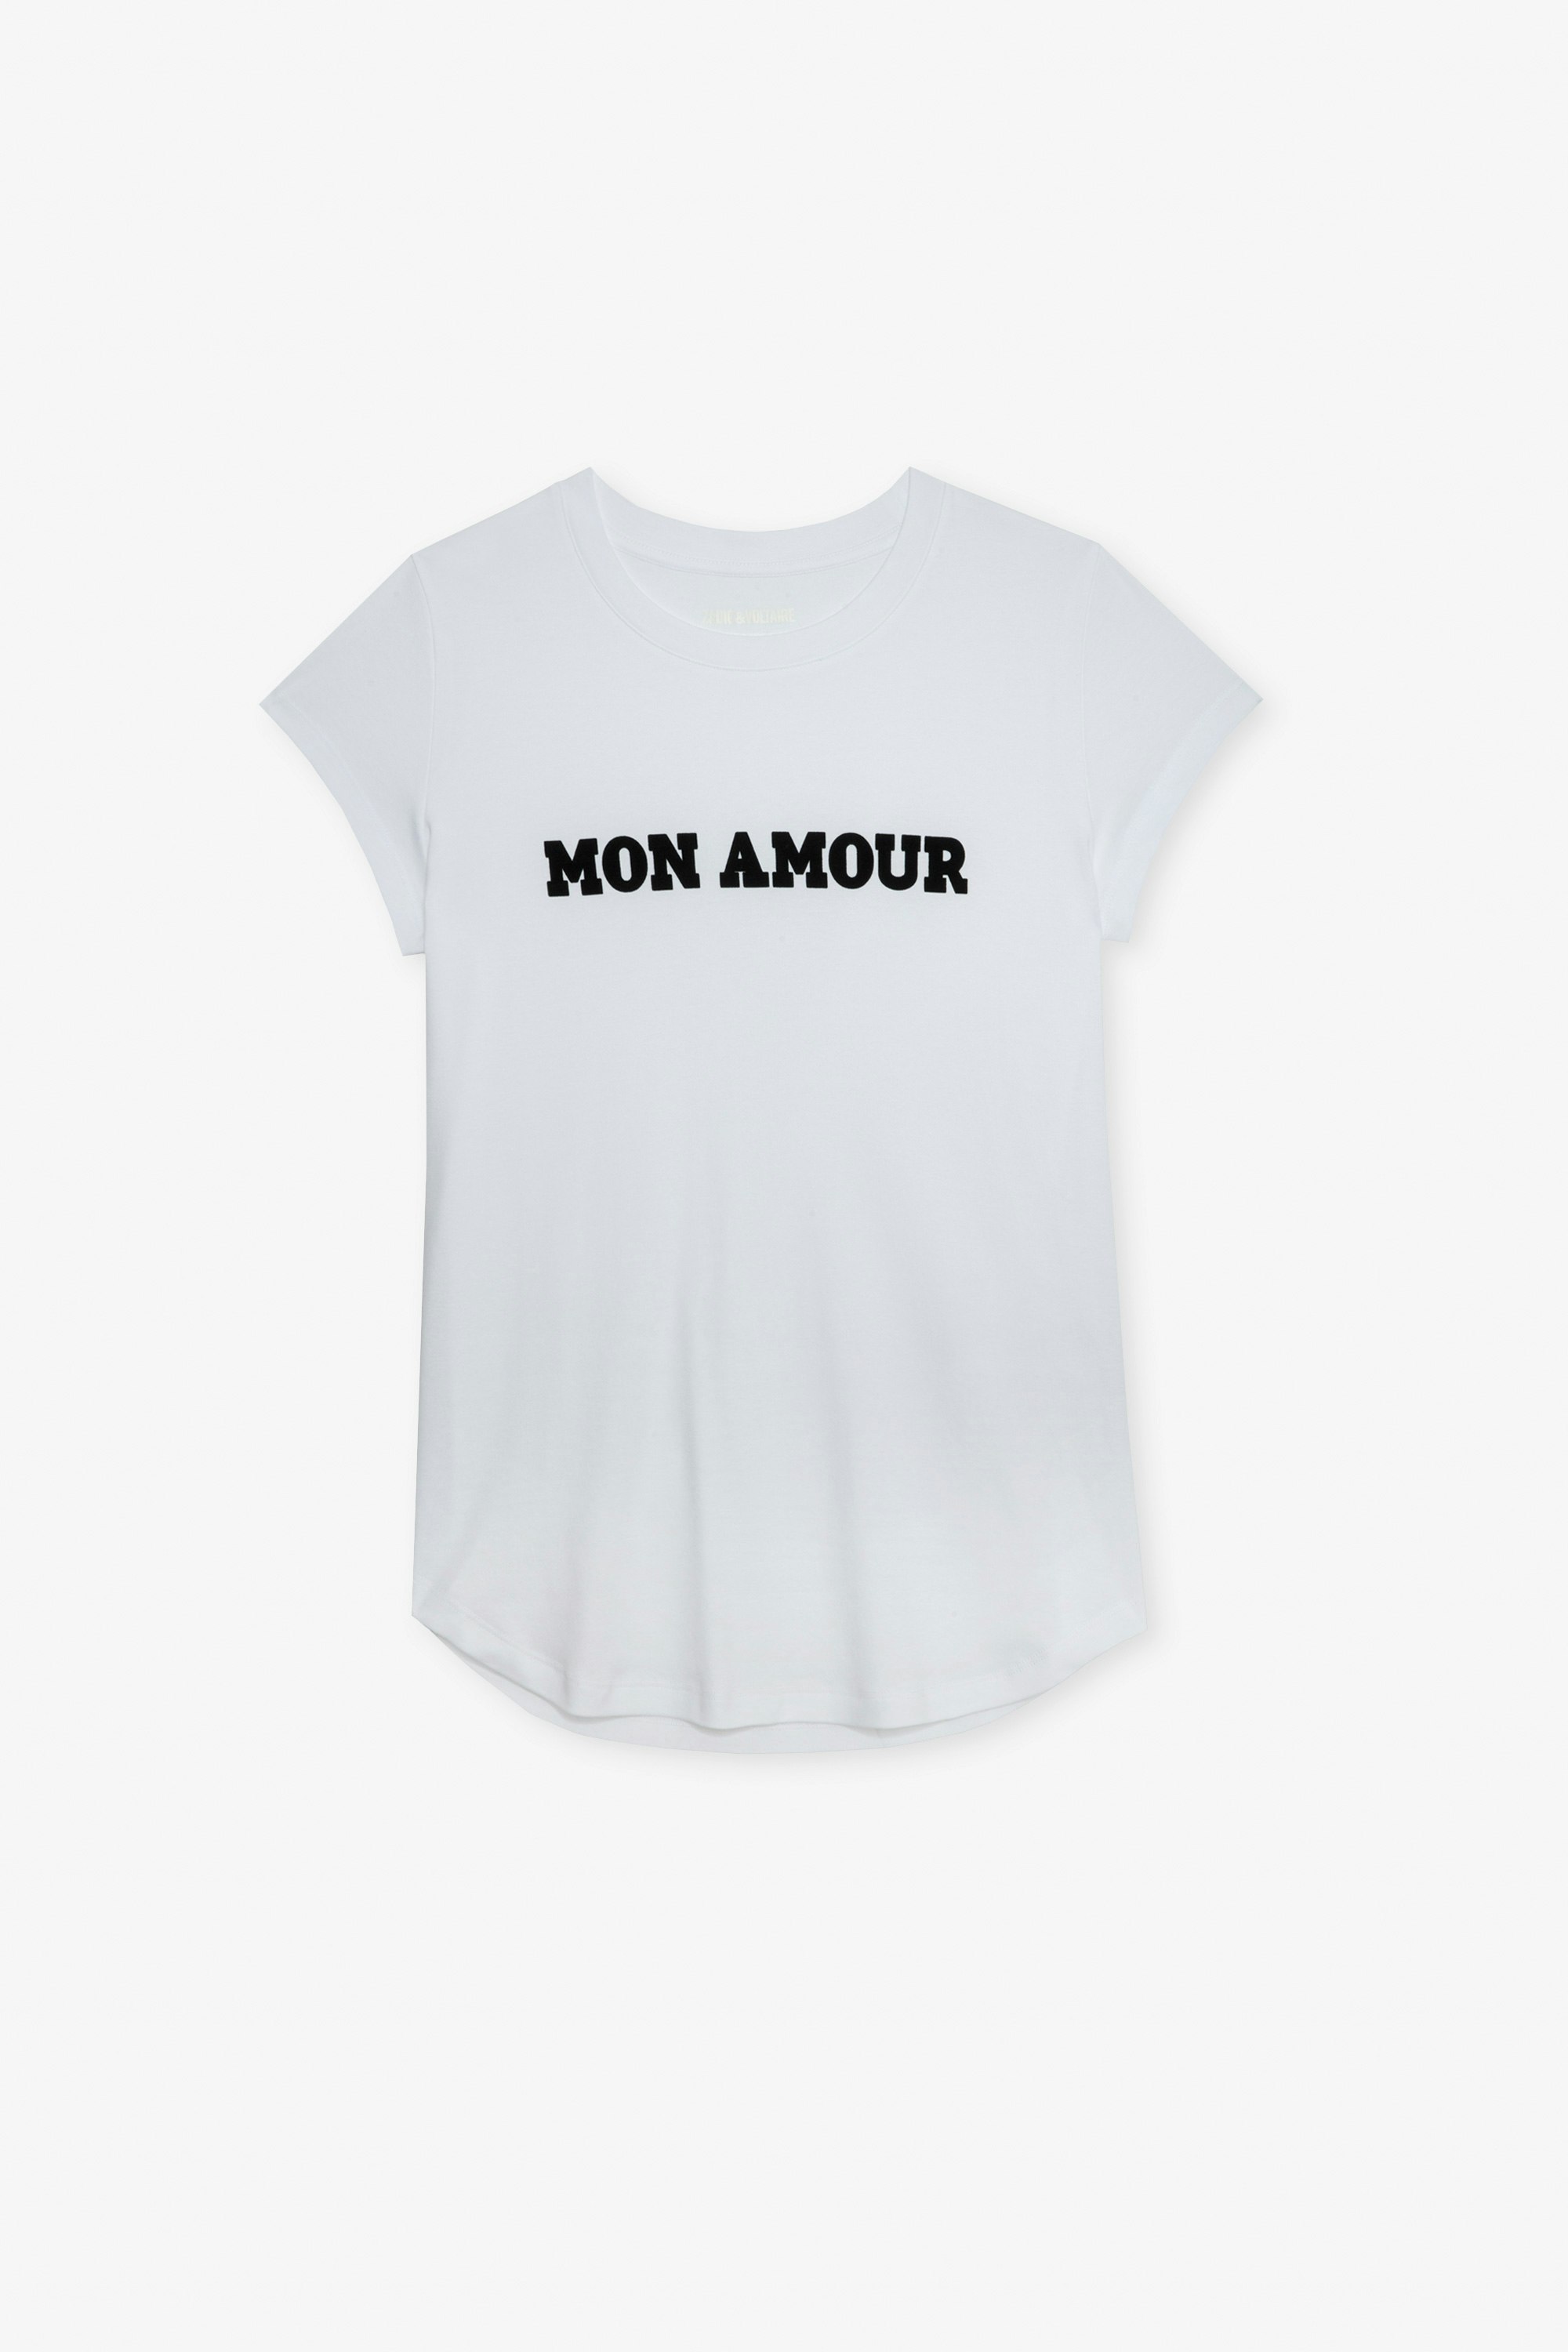 T-shirt Woop Mon Amour - T-shirt en coton blanc orné d'une inscription "Mon amour".